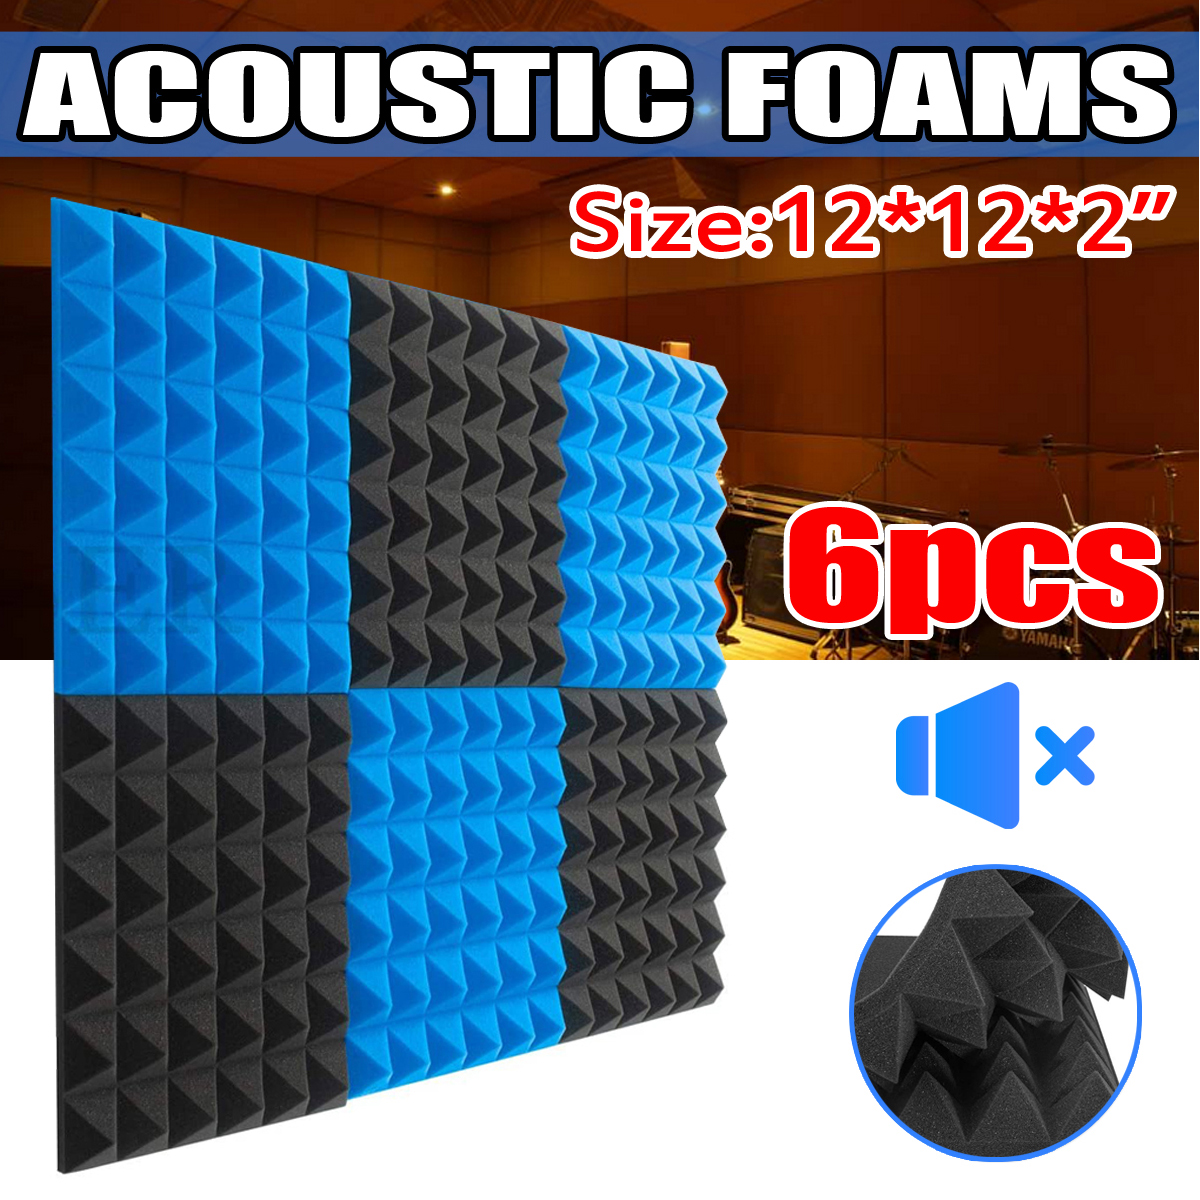 6Pcs-Acoustic-Foams-Studio-Soundproofing-Wedges-Tiles-Black--Blue-12x12x2inch-1749892-2